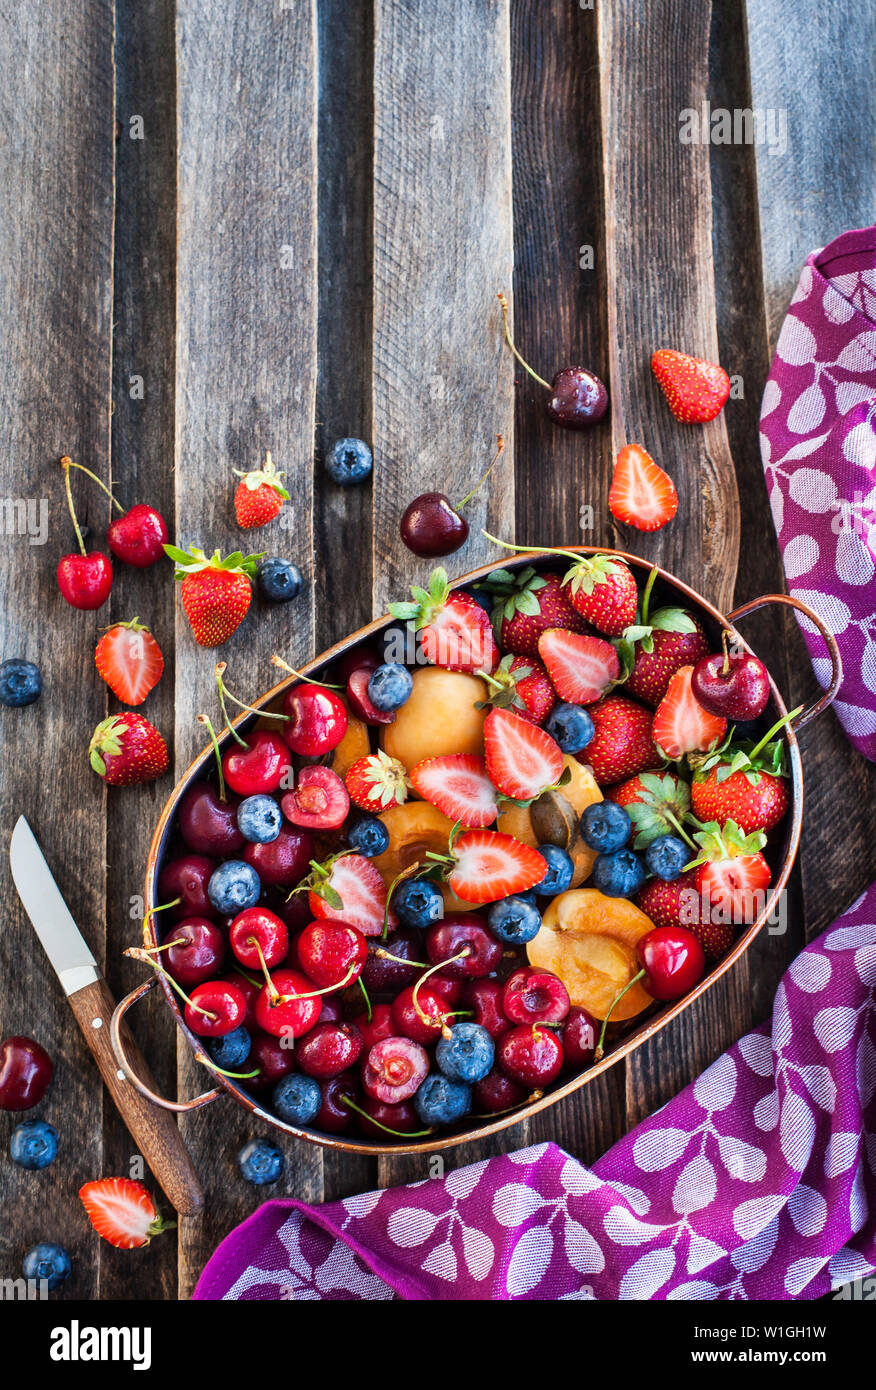 Les baies d'été frais mûrs et de fruits (cerise, fraise, myrtille, abricot) sur fond de bois rustique, vue du dessus Banque D'Images